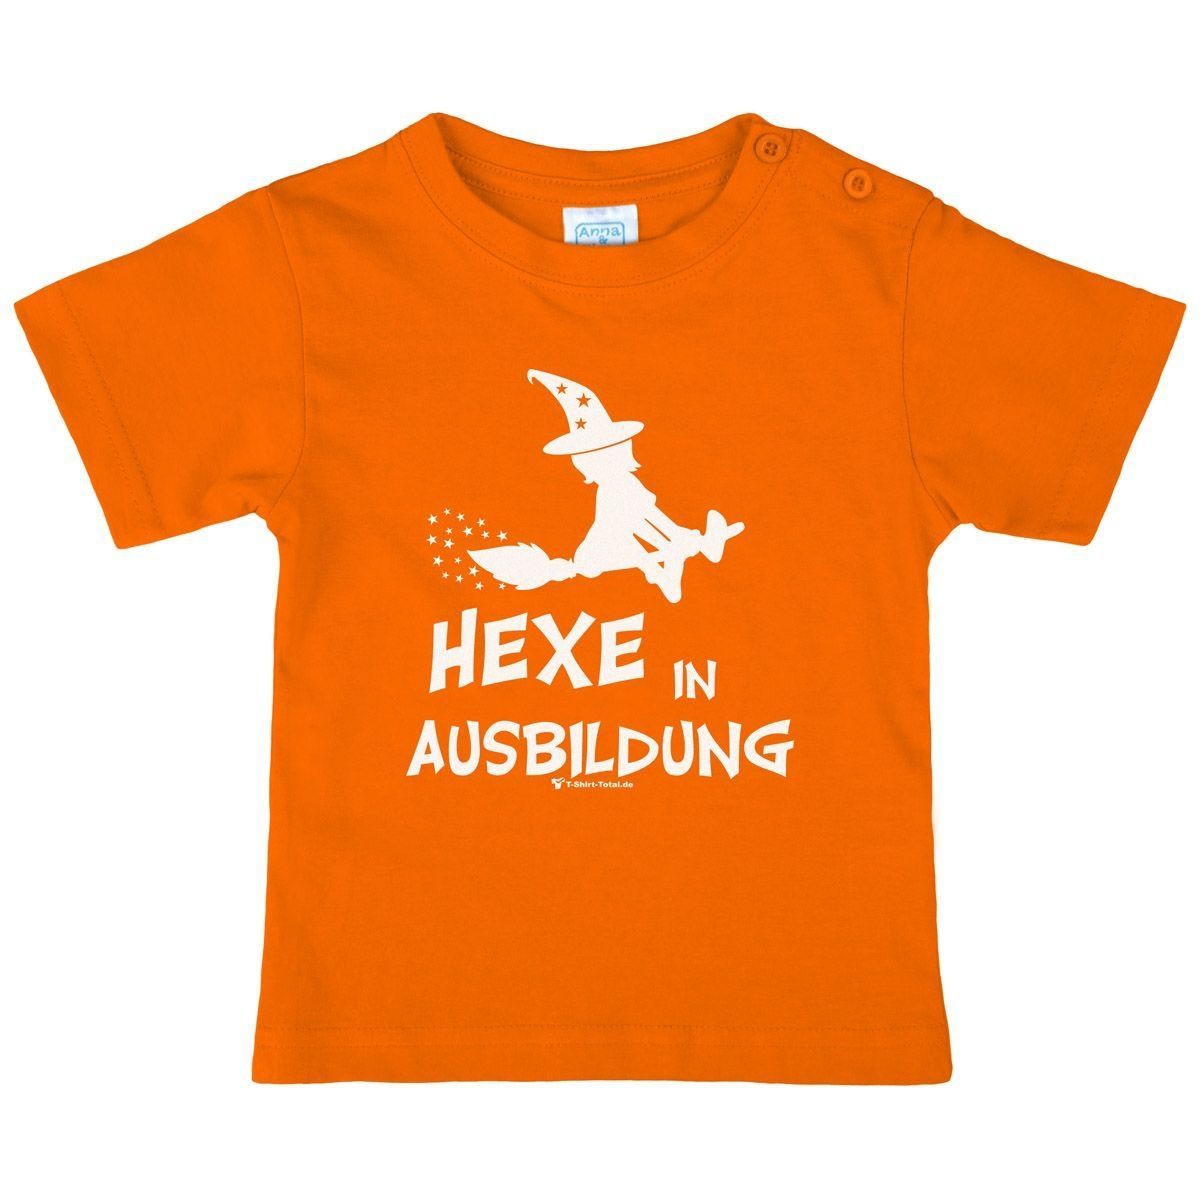 Hexe in Ausbildung Kinder T-Shirt orange 110 / 116